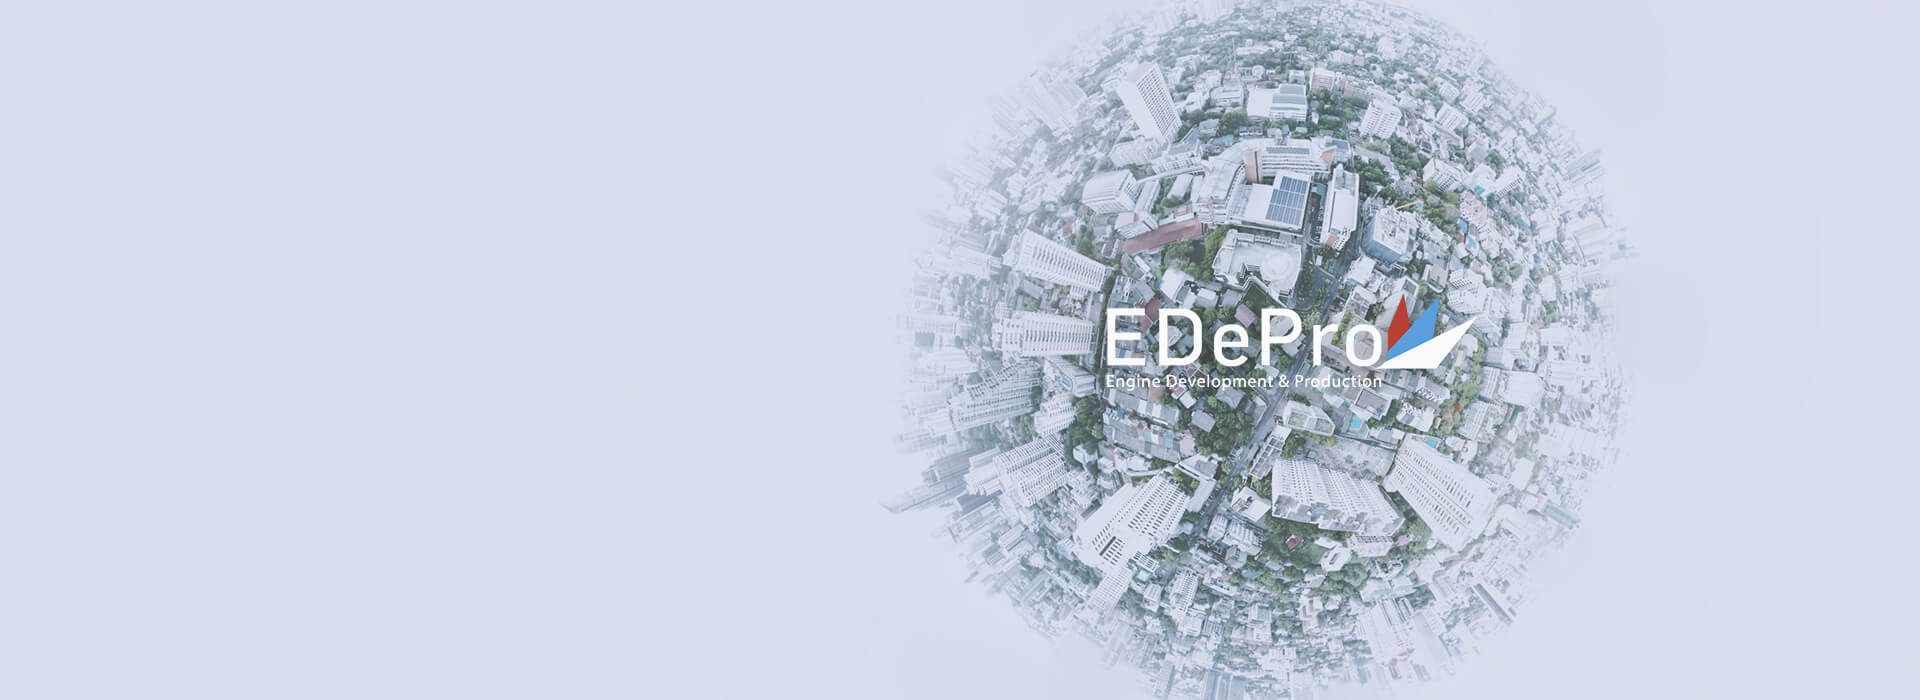 EDePro | OFFICIAL COMPANY STATEMENT | ВАЖНОЕ СООБщЕНИЕ